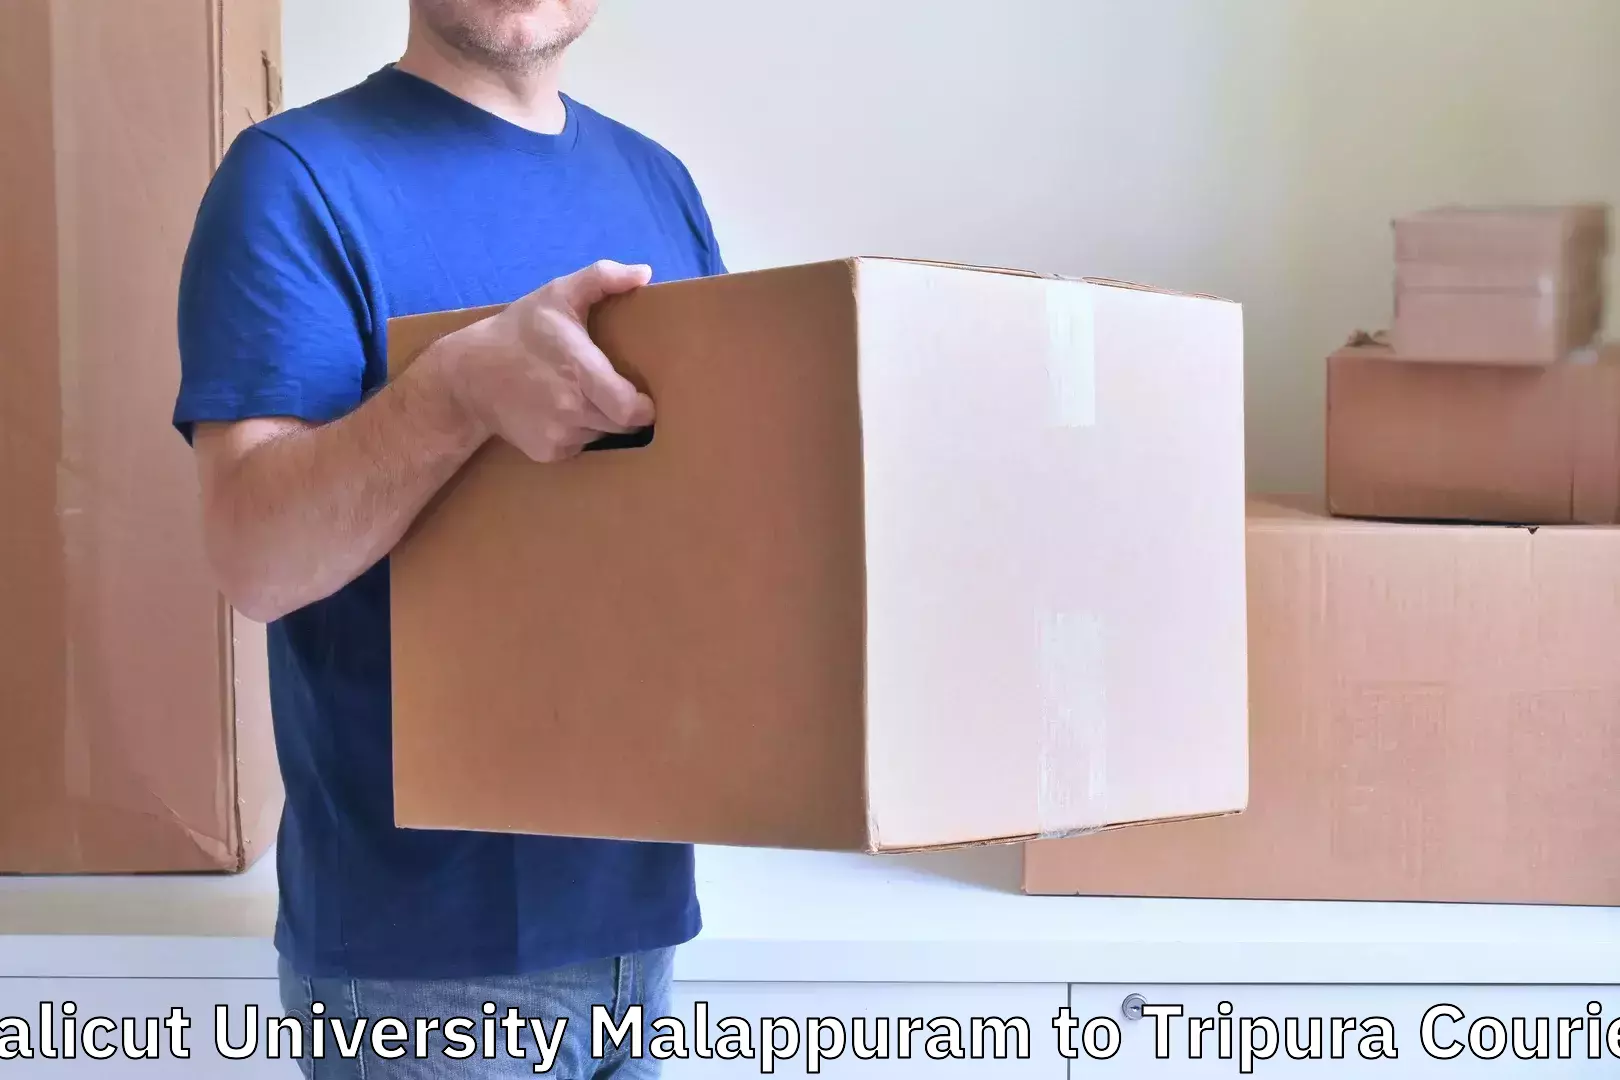 Luggage shipping service Calicut University Malappuram to Udaipur Tripura